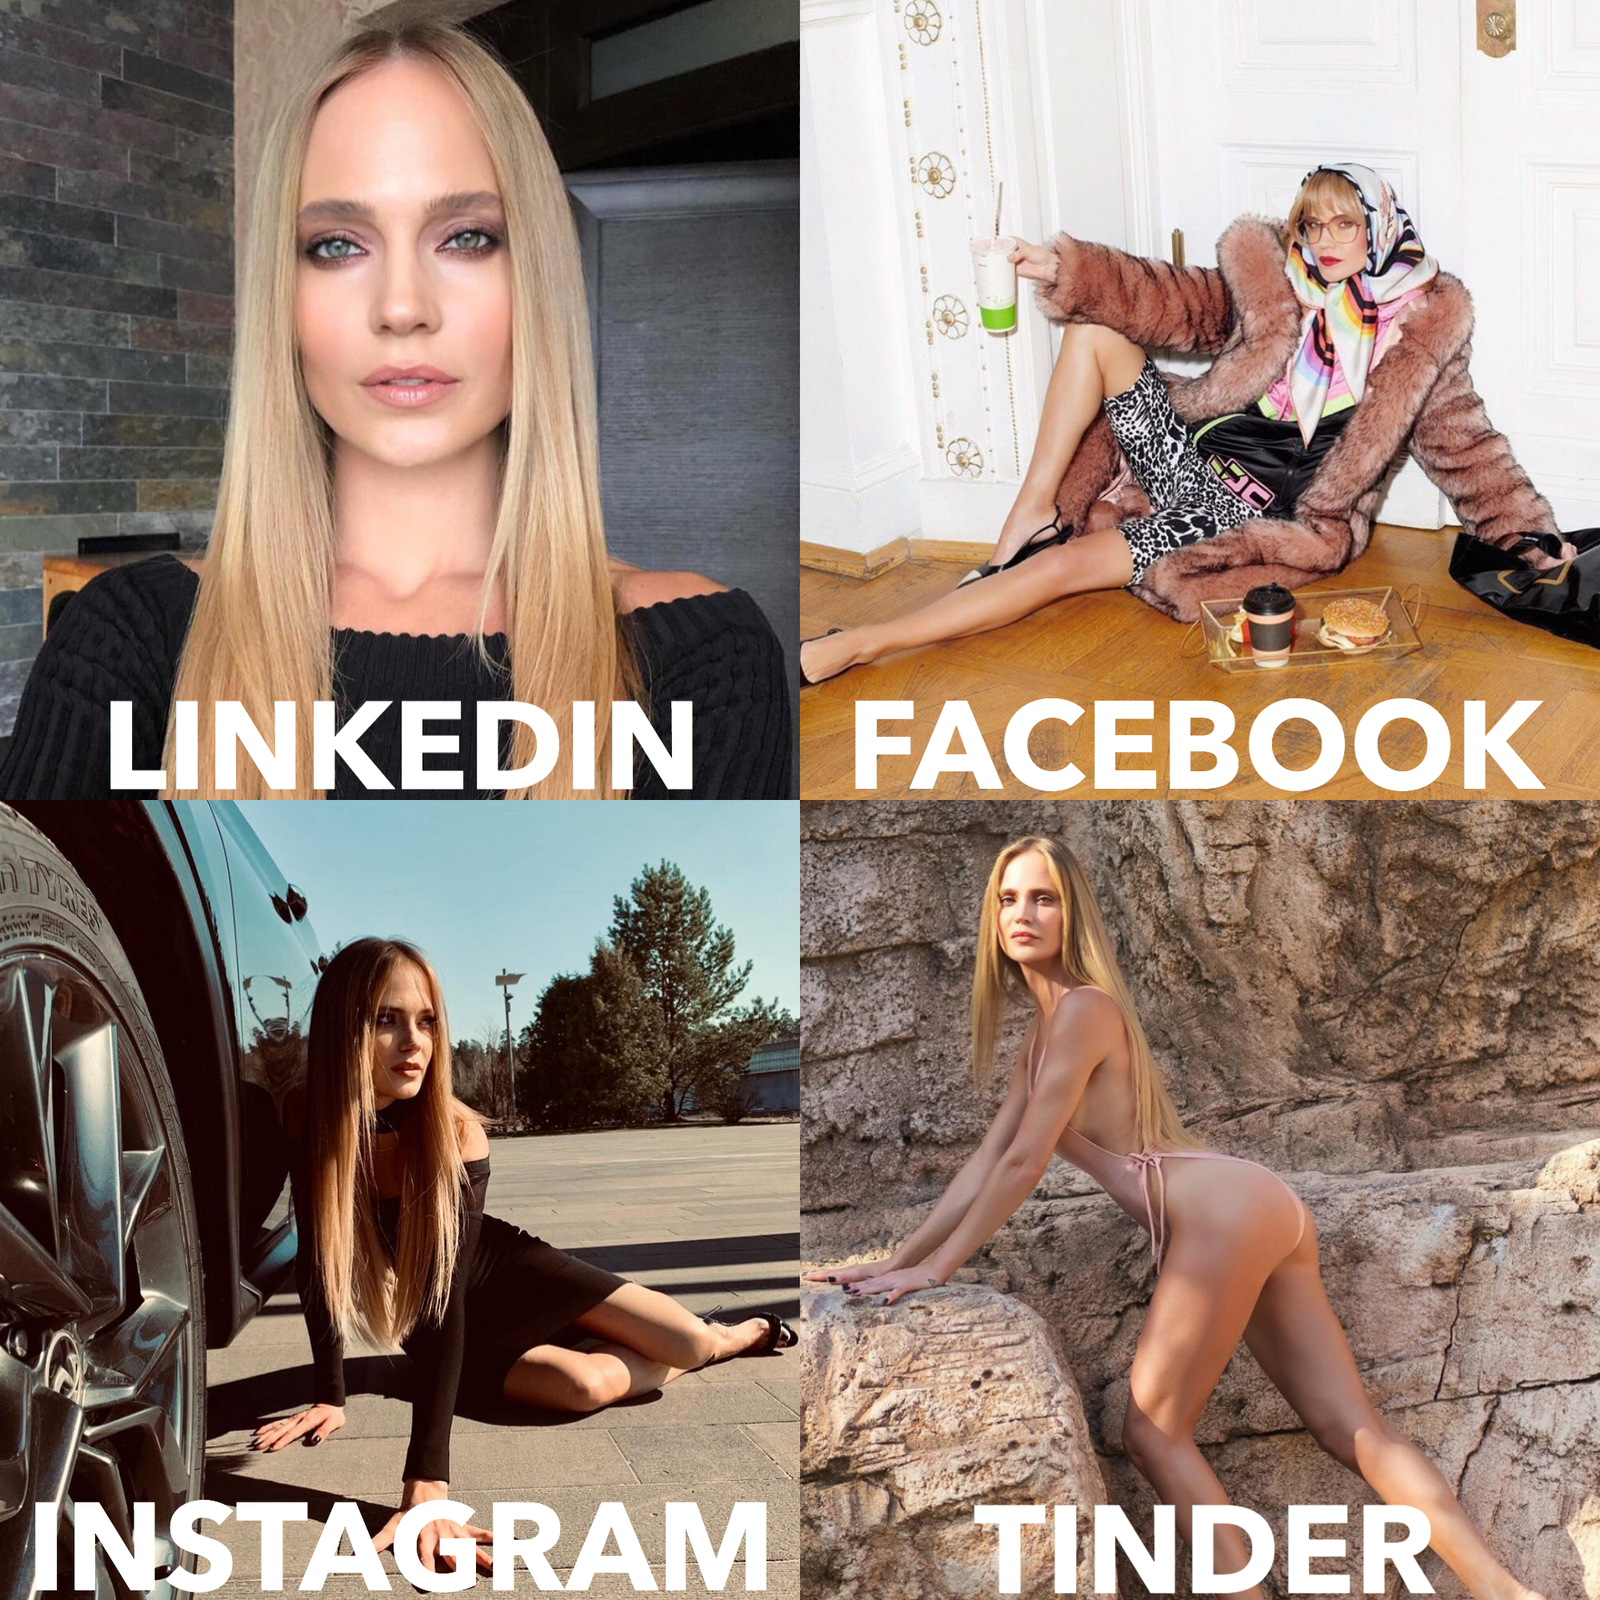 Как мы видим героинь Tatler во флешмобе Tinder Instagram Facebook и LinkedIn